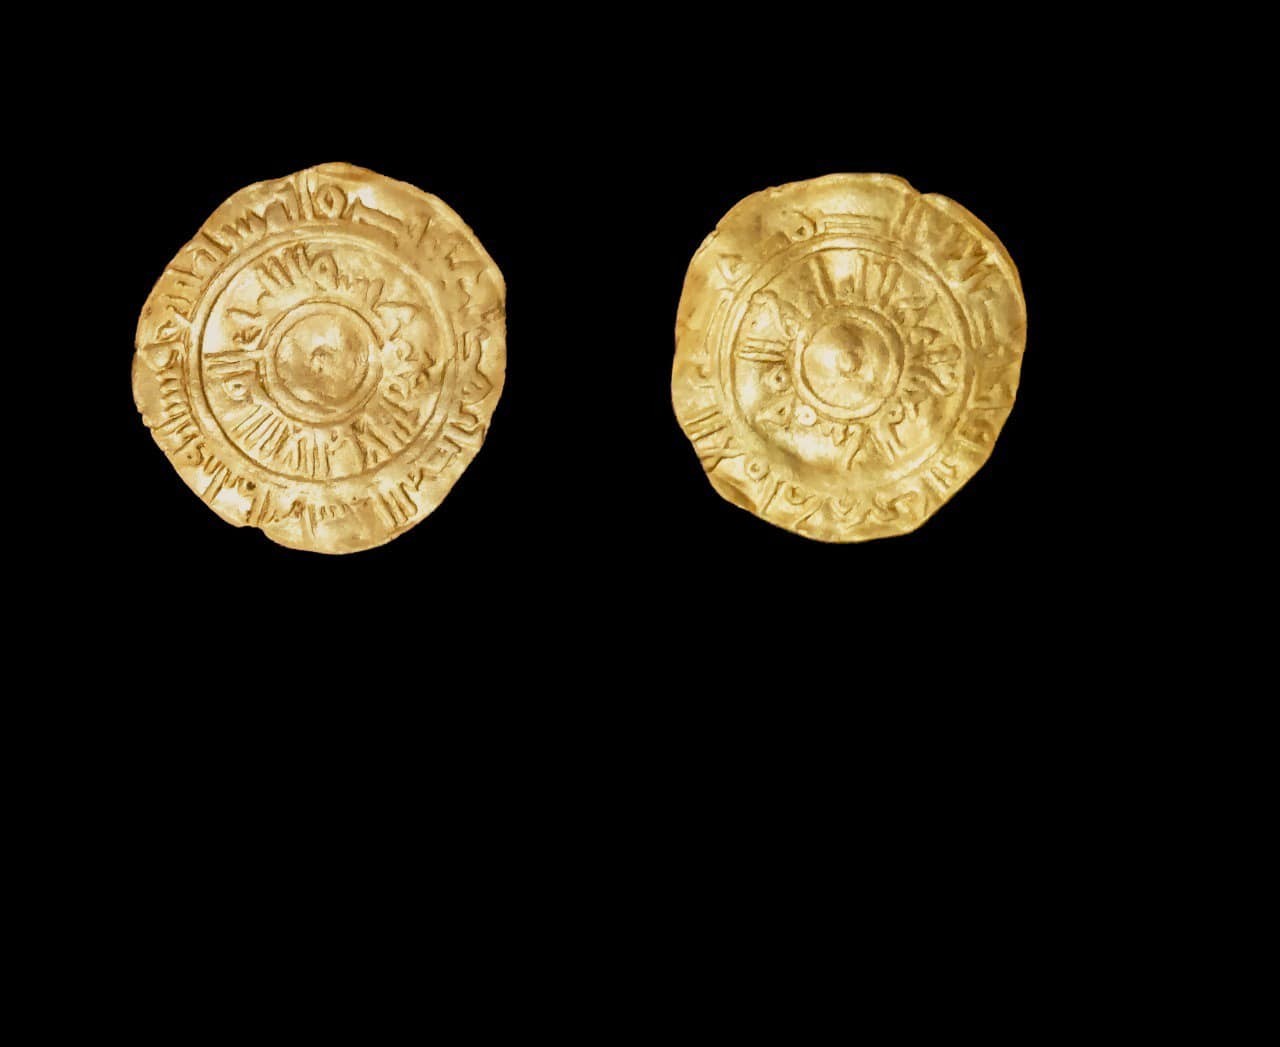 Moedas douradas da era islâmica encontradas em escavações no Egito  (Foto: Ministry of Tourism and Antiquities/Reprodução/Facebook)